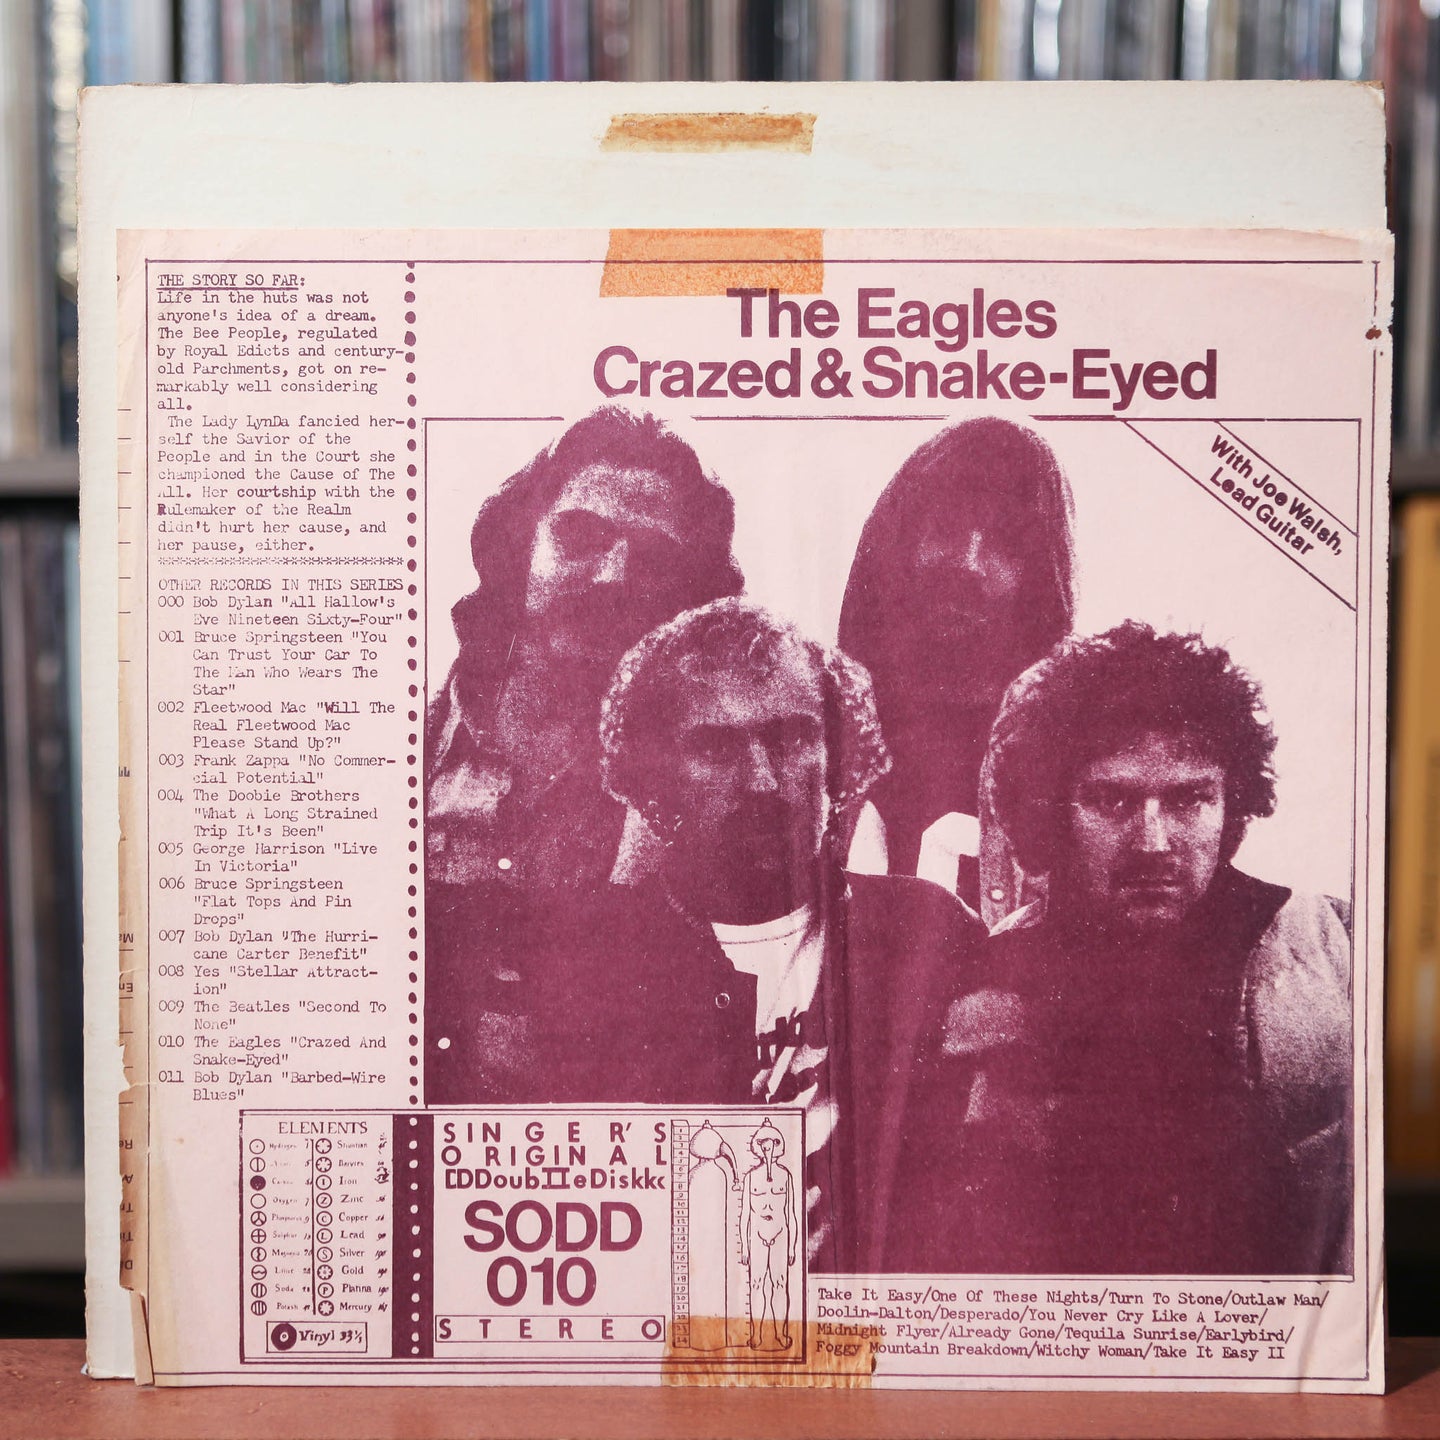 Eagles - Crazed & Snake-Eyed - 2LP - RARE Private Press - 1977 Singer's Original Double Disk, VG/VG+